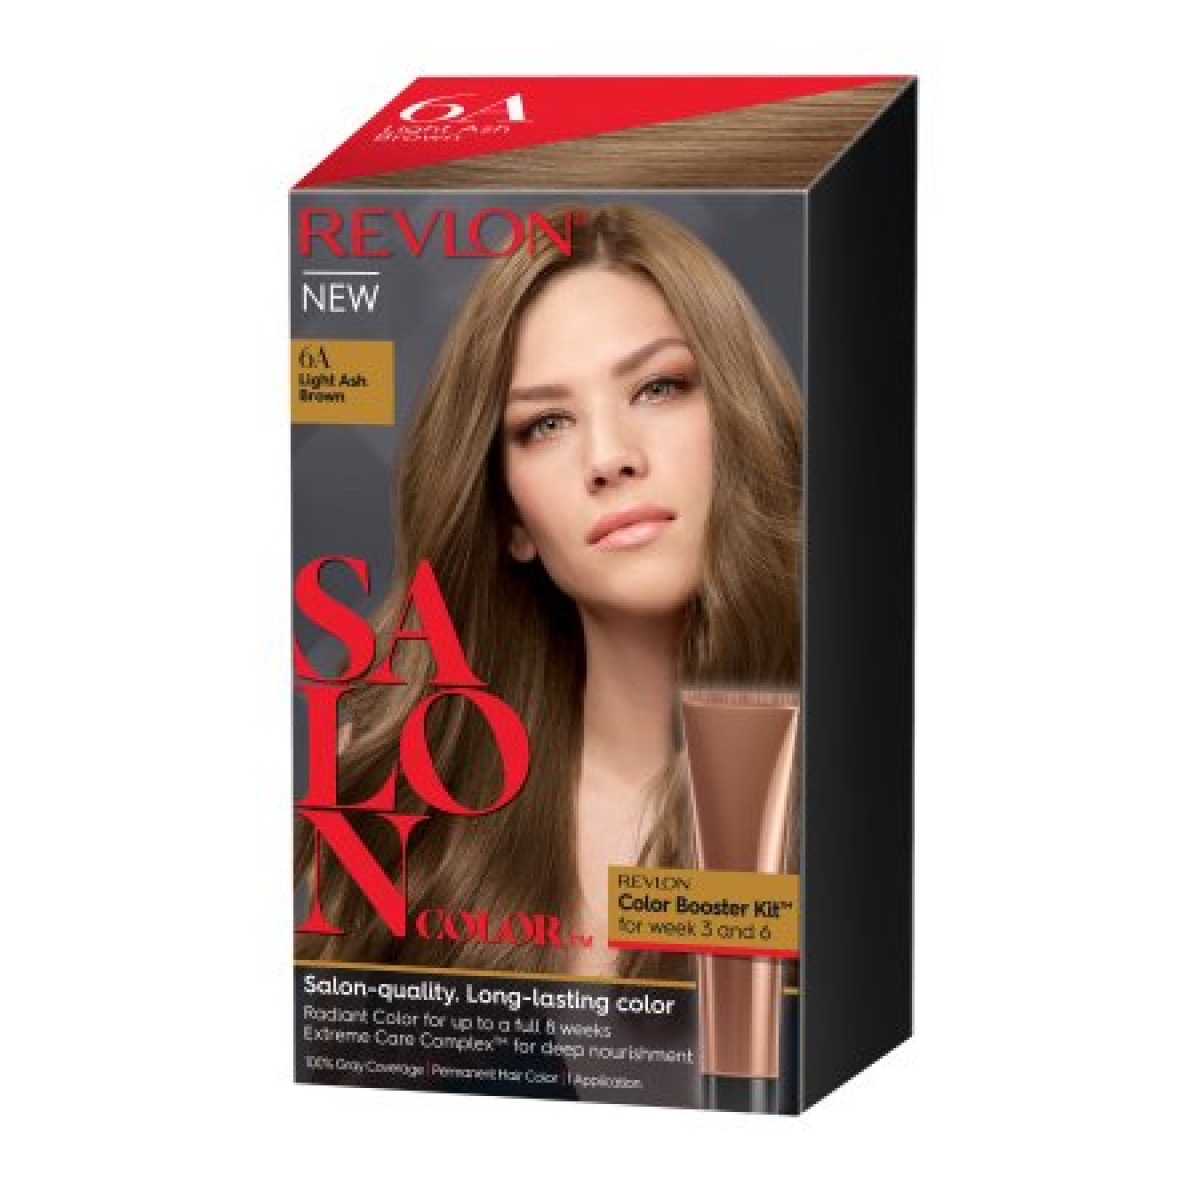 Revlon Salon Hair Color Light Ash Brown, 1 Application